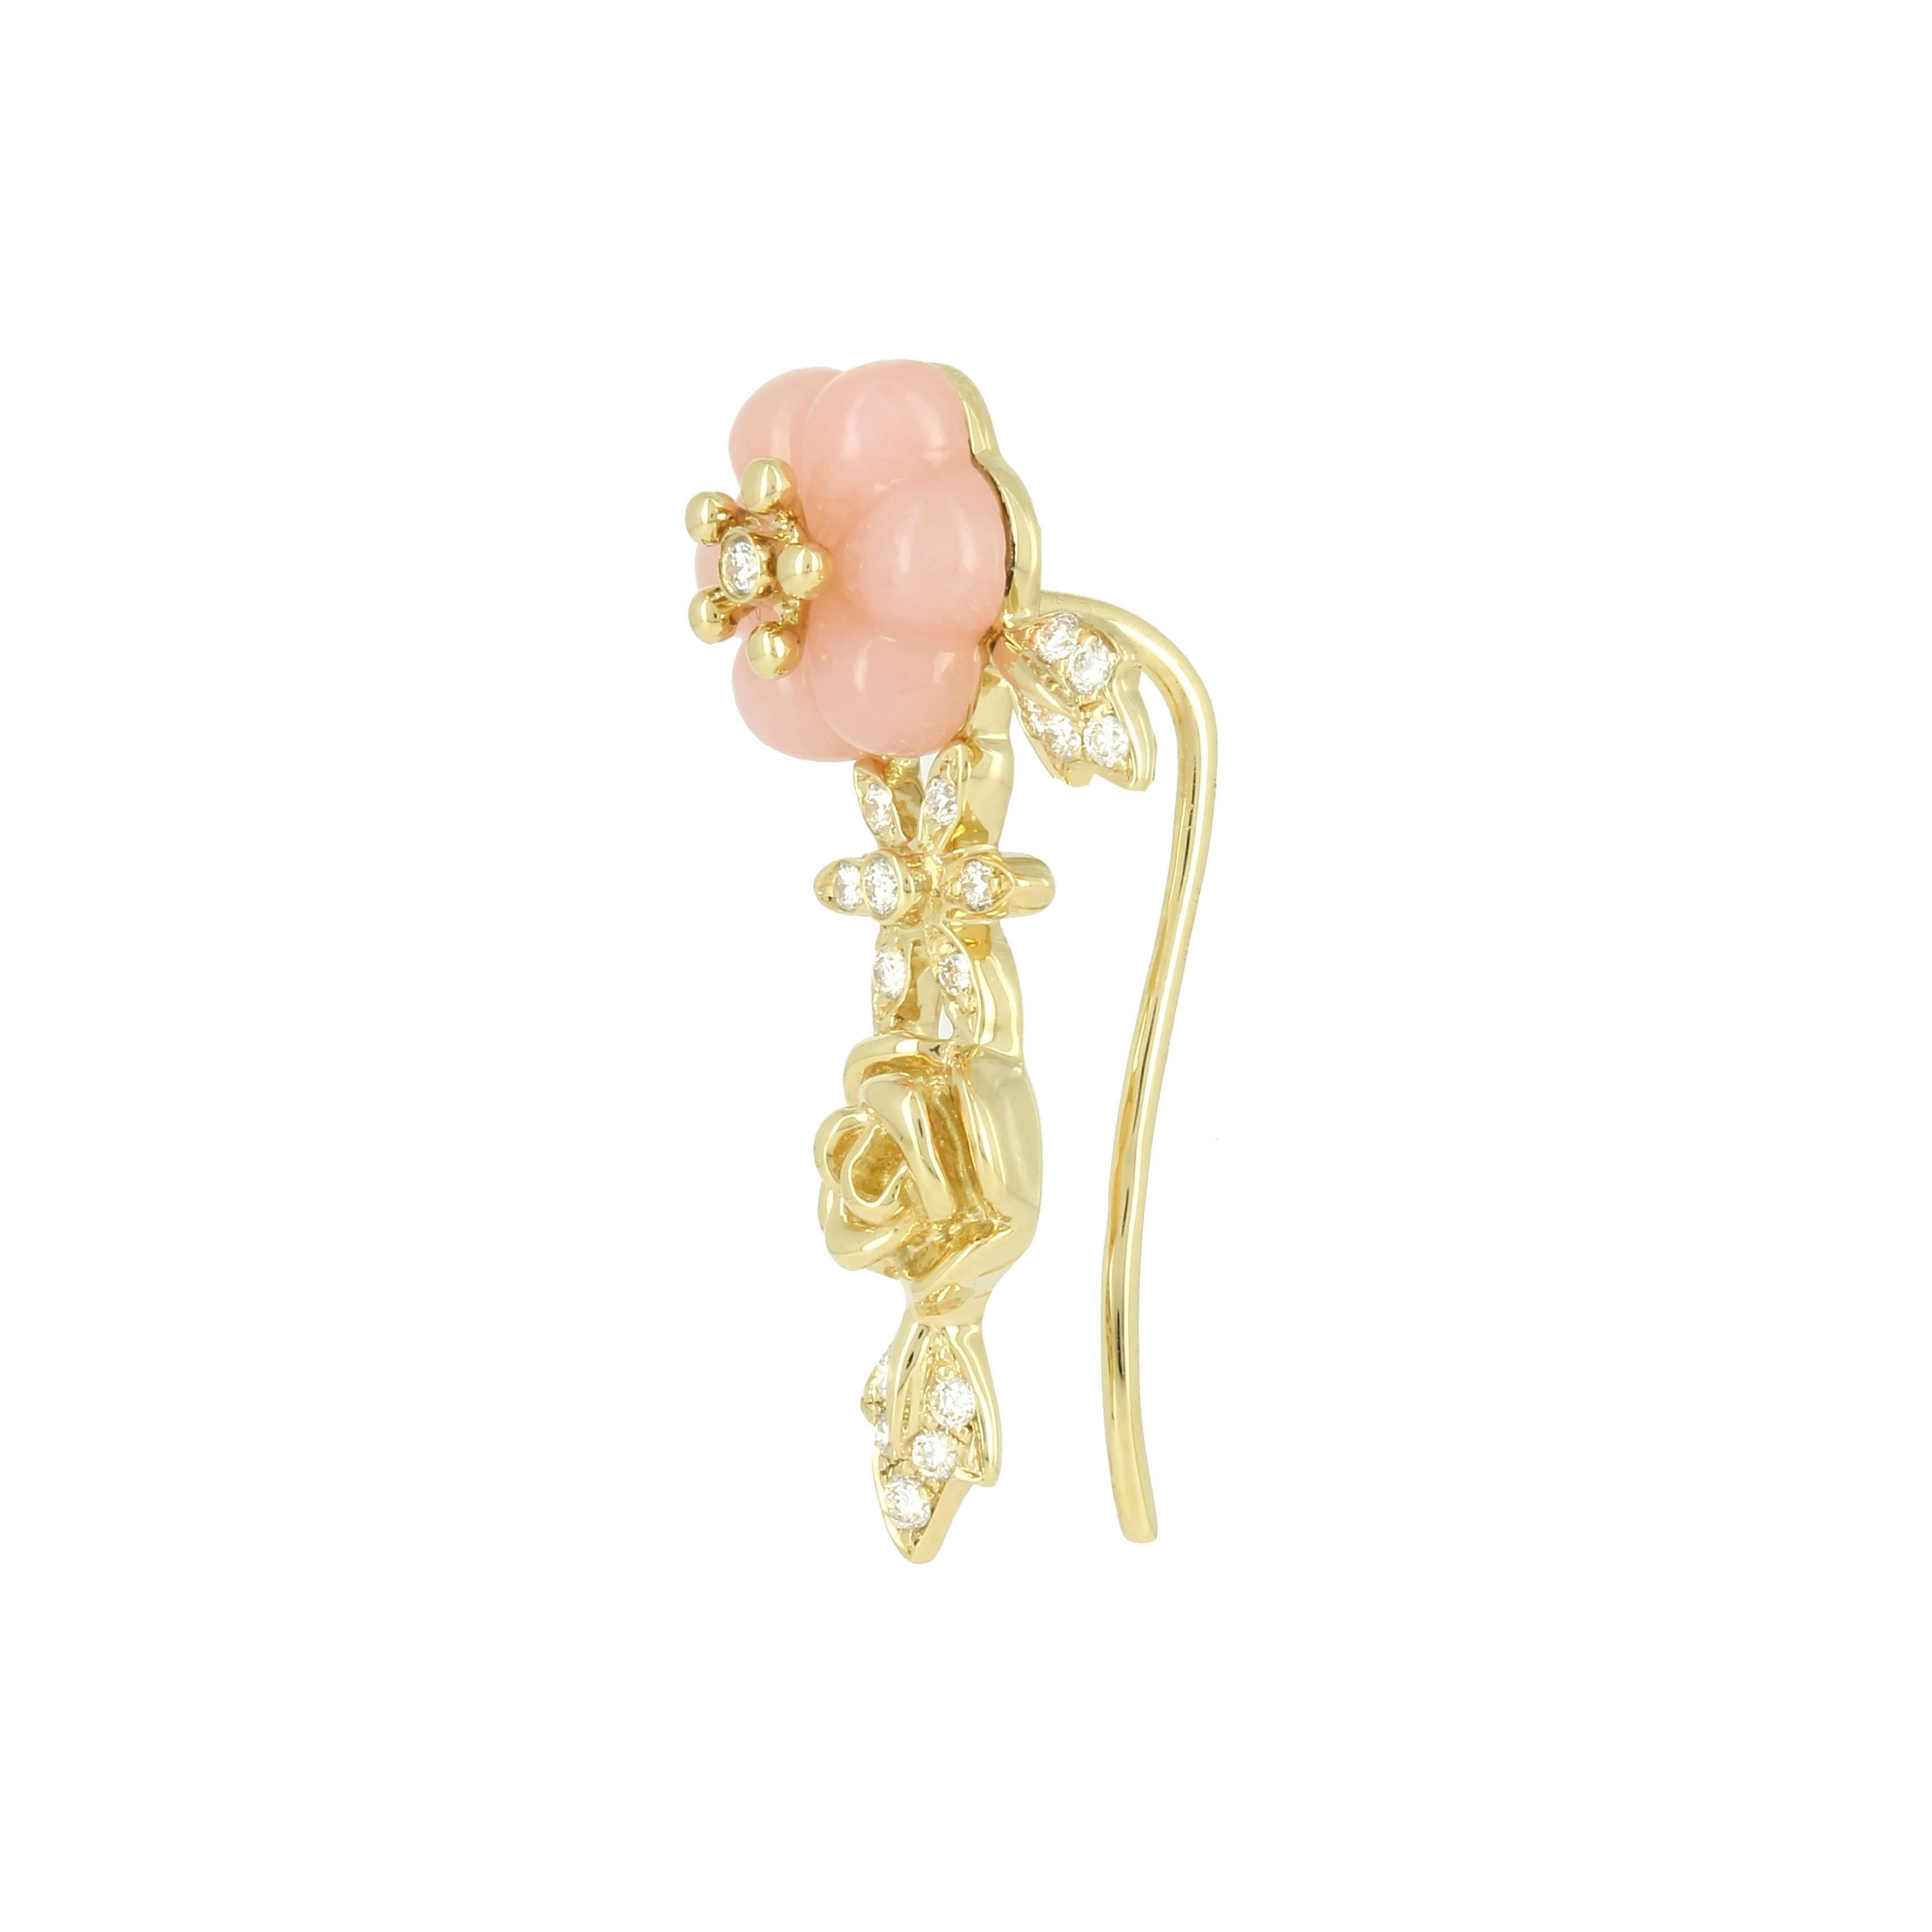 Yvonne Leon Earring Pink Opal Rose 18 Karat Yellow Gold